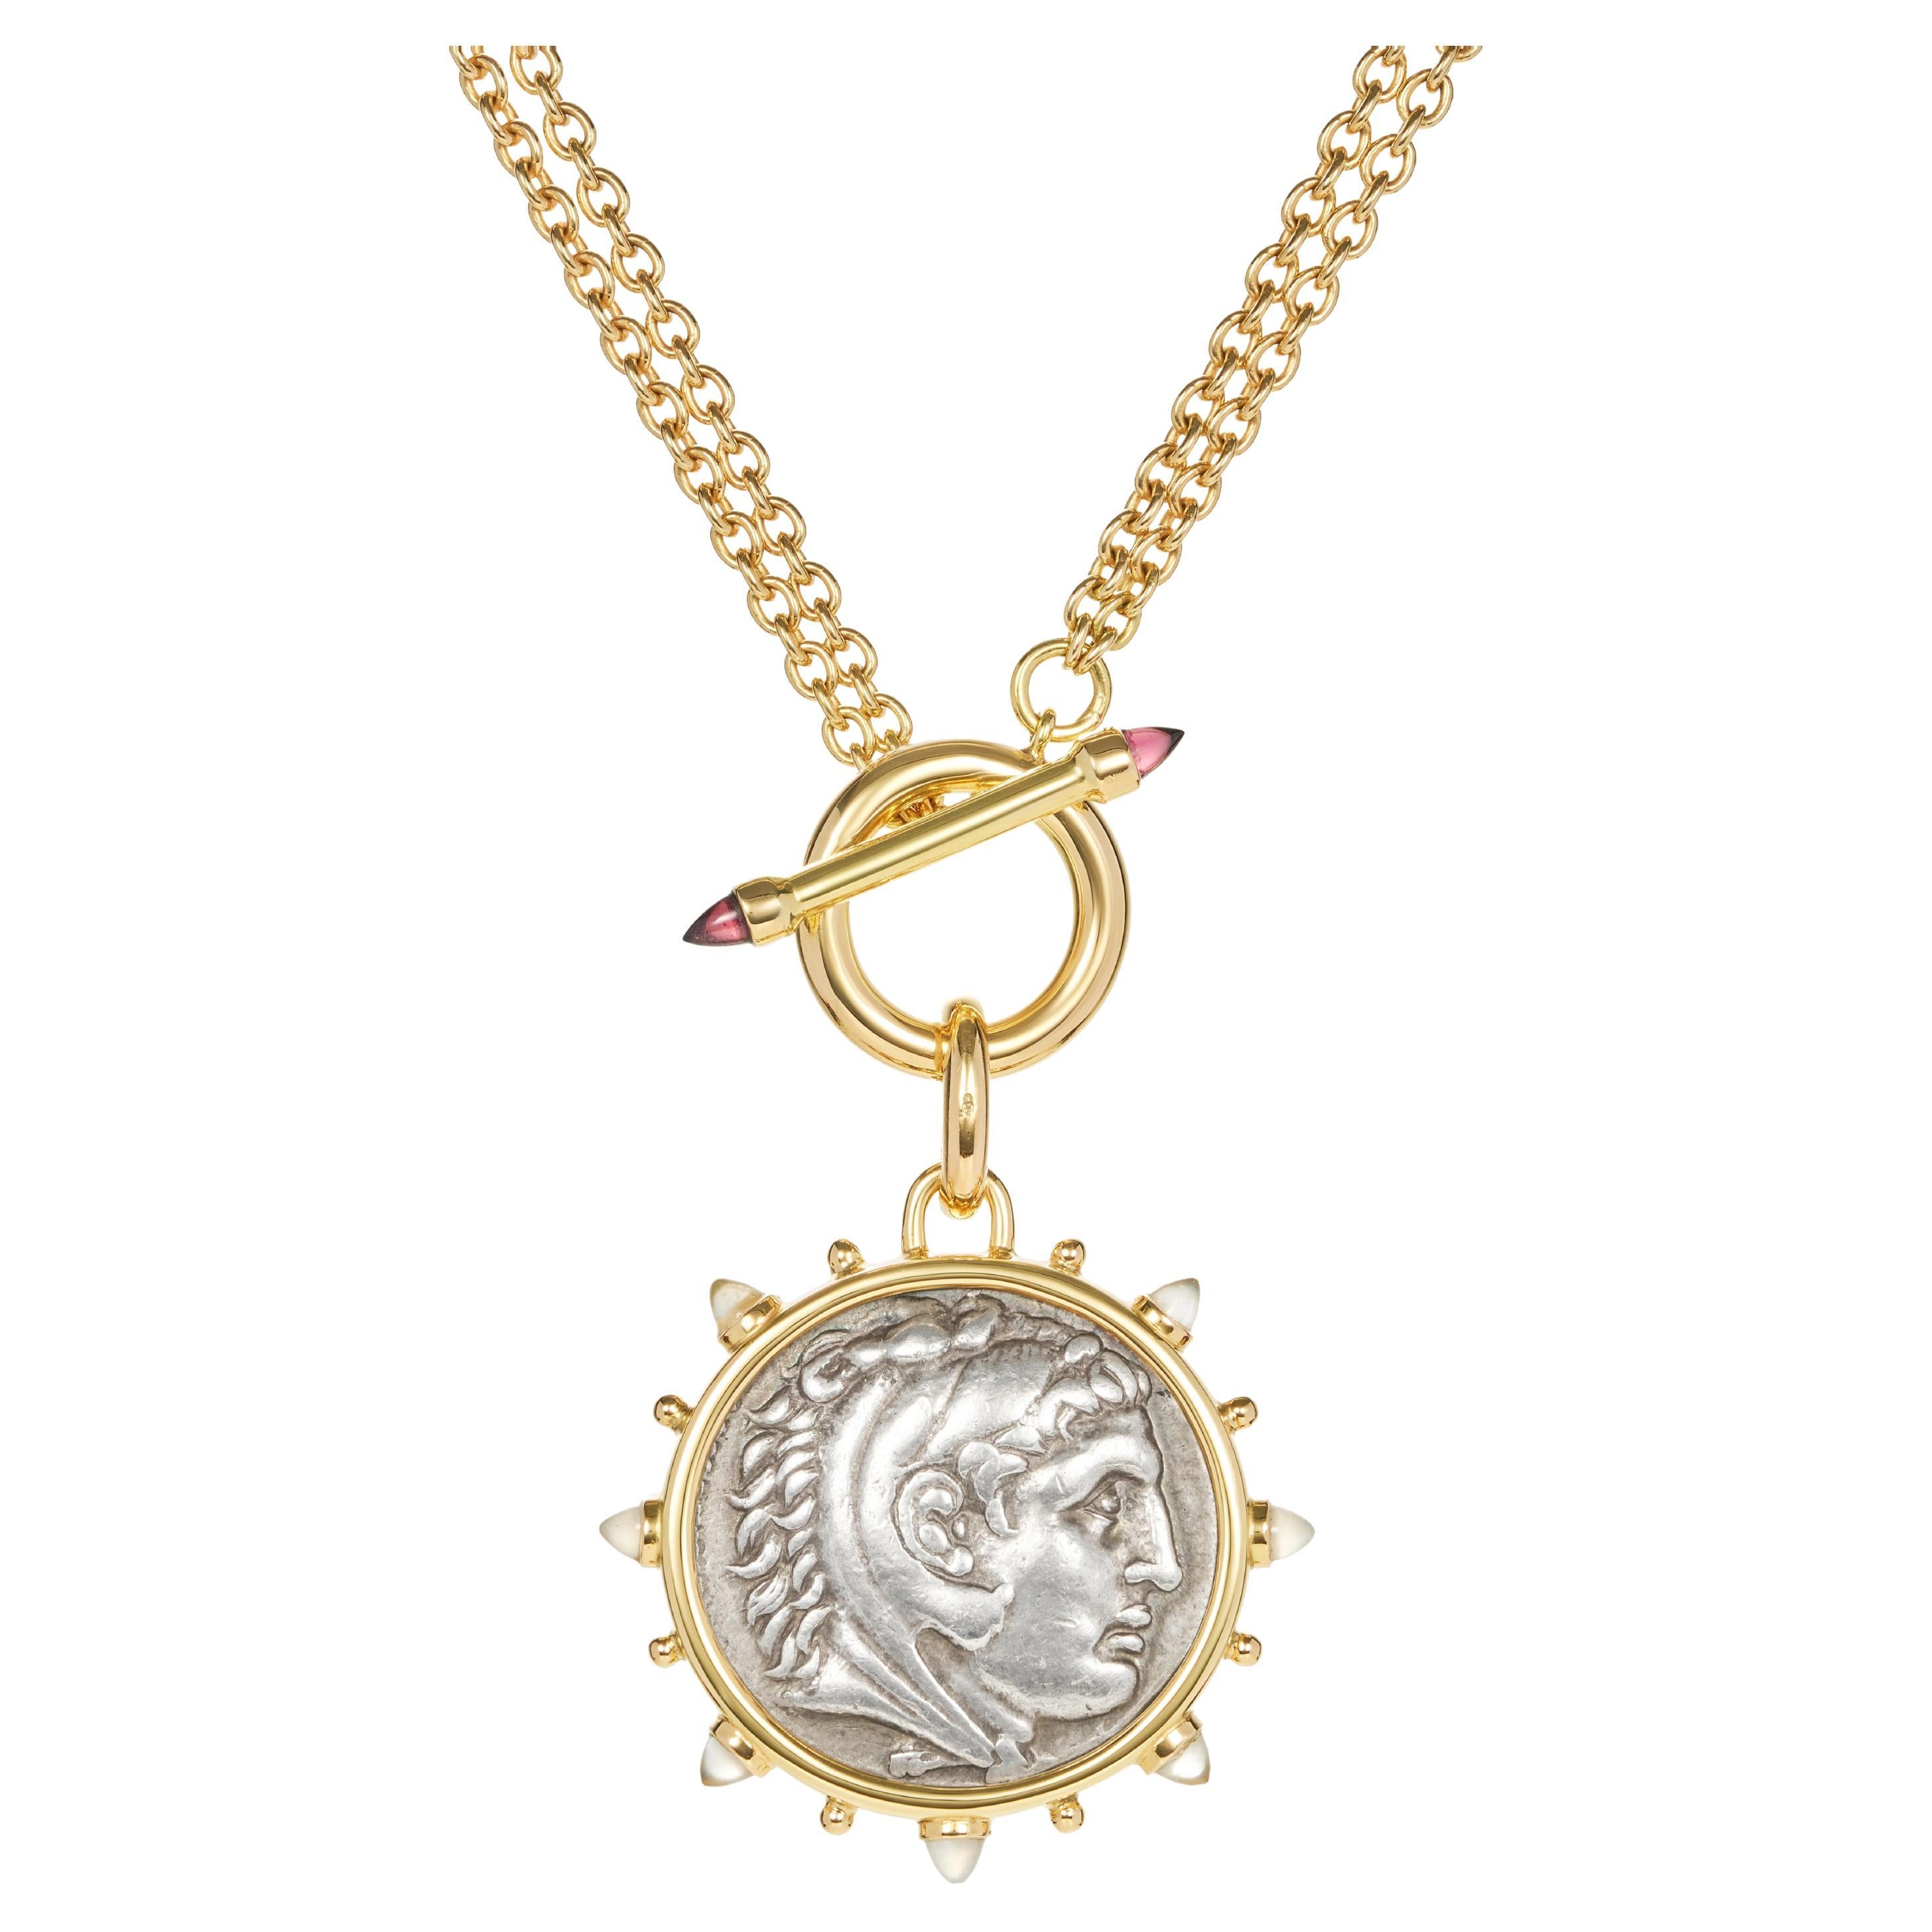 Dubini, collier à bascule « Alexander the Great Ancient Silver Coin » en or avec médaillon